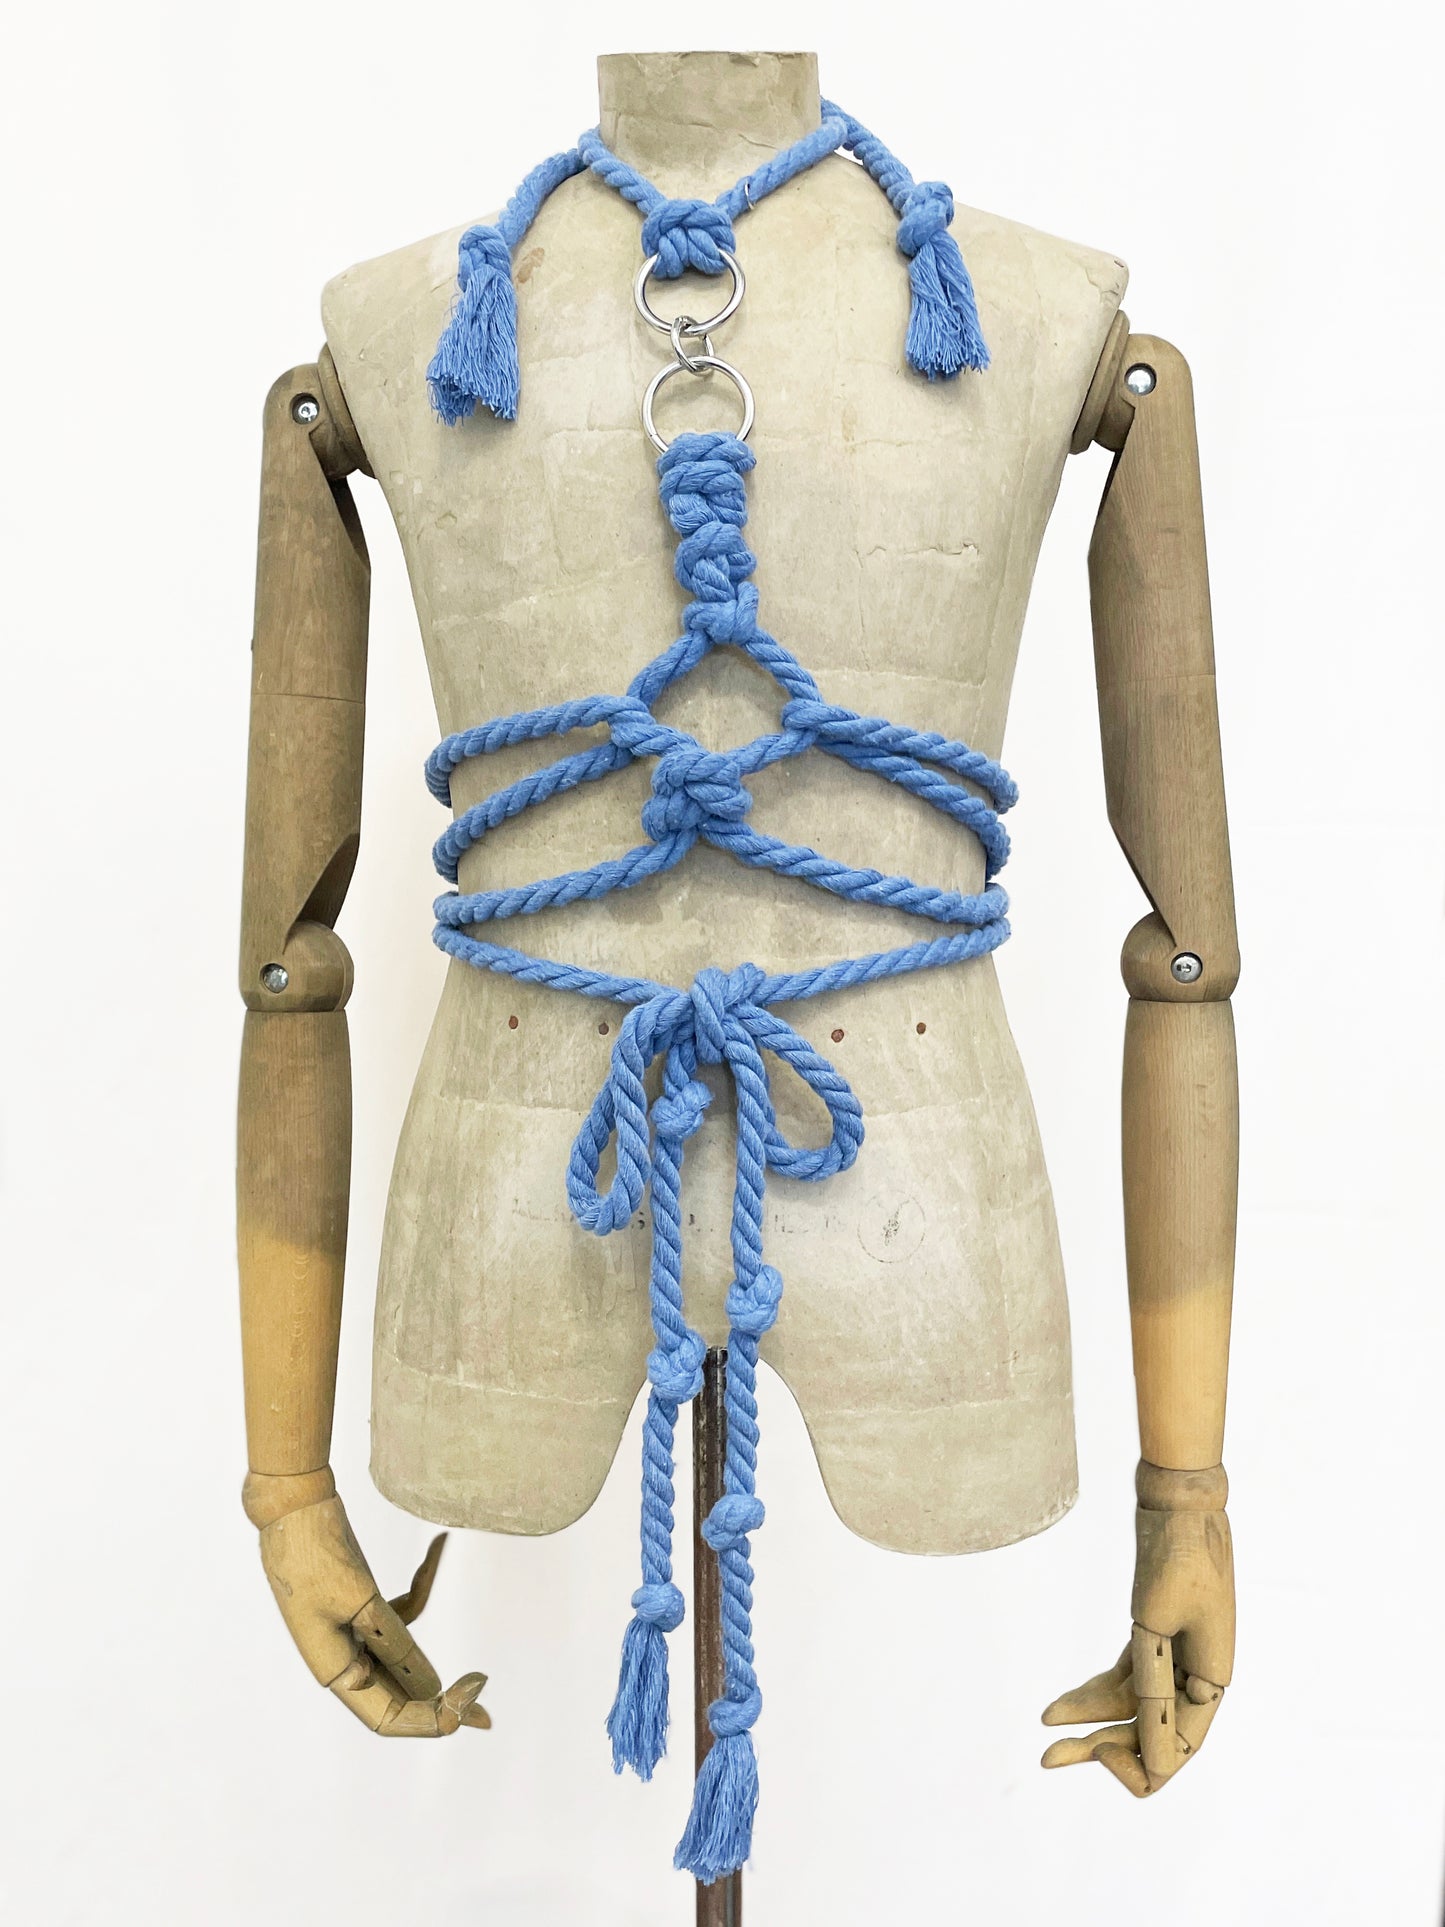 Shibari Rope Harness